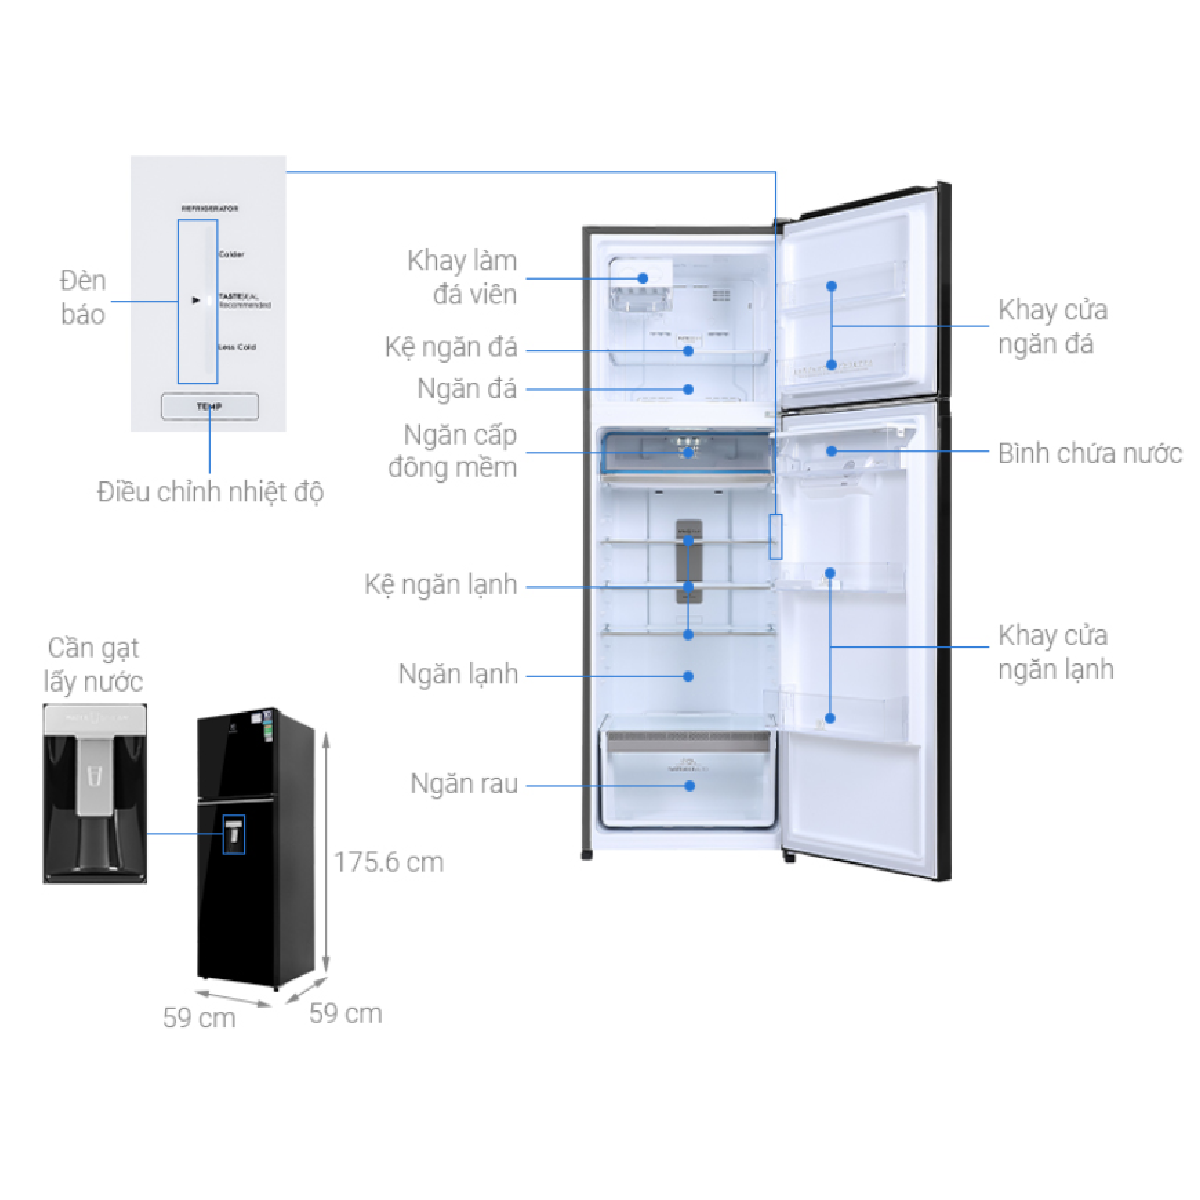 [Trả góp 0%]Tủ lạnh Electrolux Inverter 341 lít ETB3740K-H